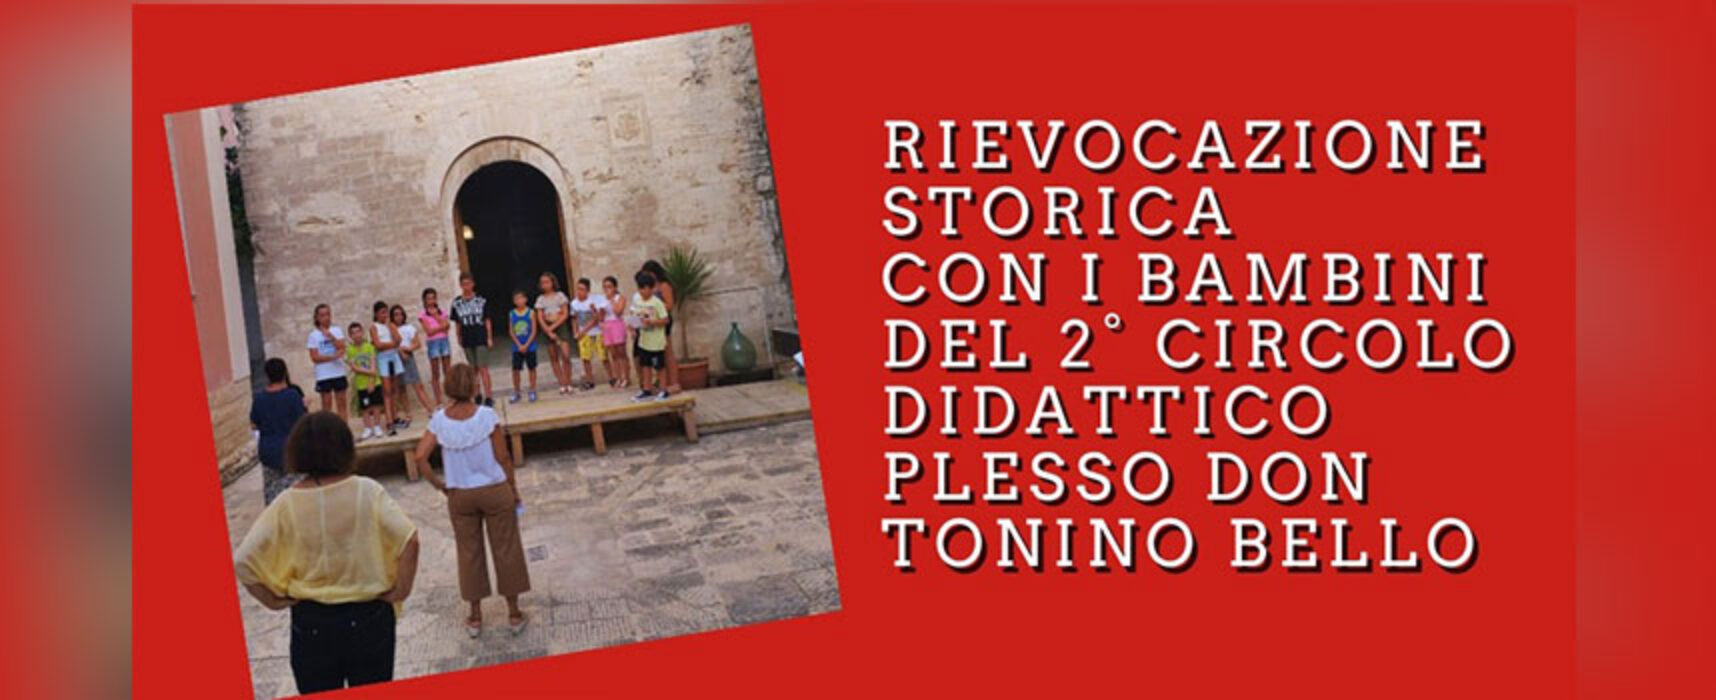 Tra Castello e Chiesa di Santa Margherita rievocazione storica inedita con 30 bambini